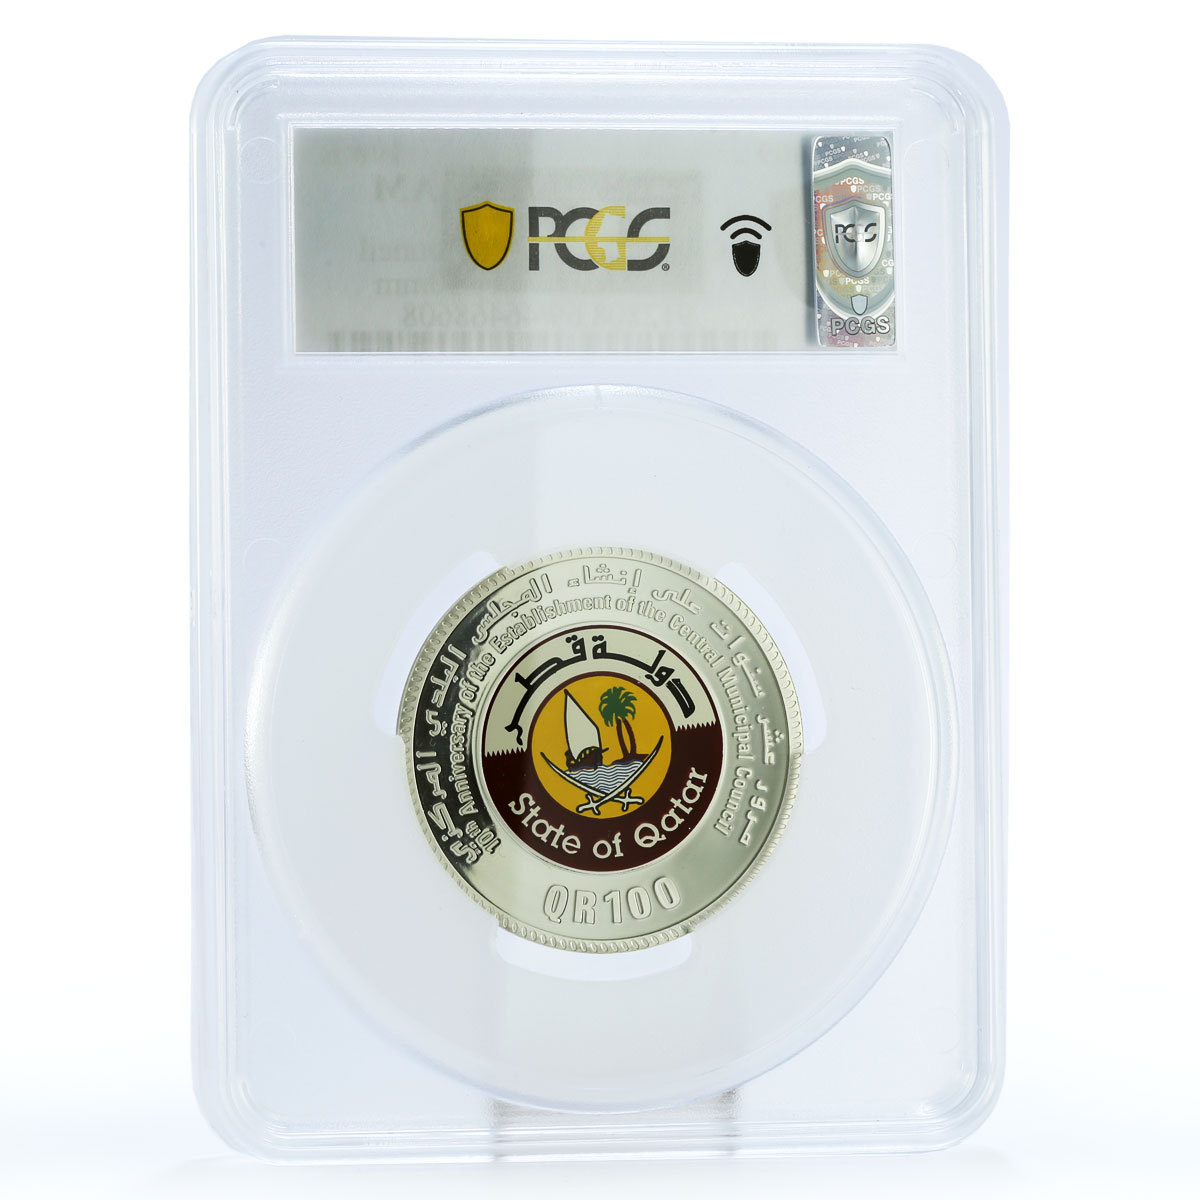 Qatar 100 riyals 10 Years Central Municipal Council PR69 PCGS silver coin 2009